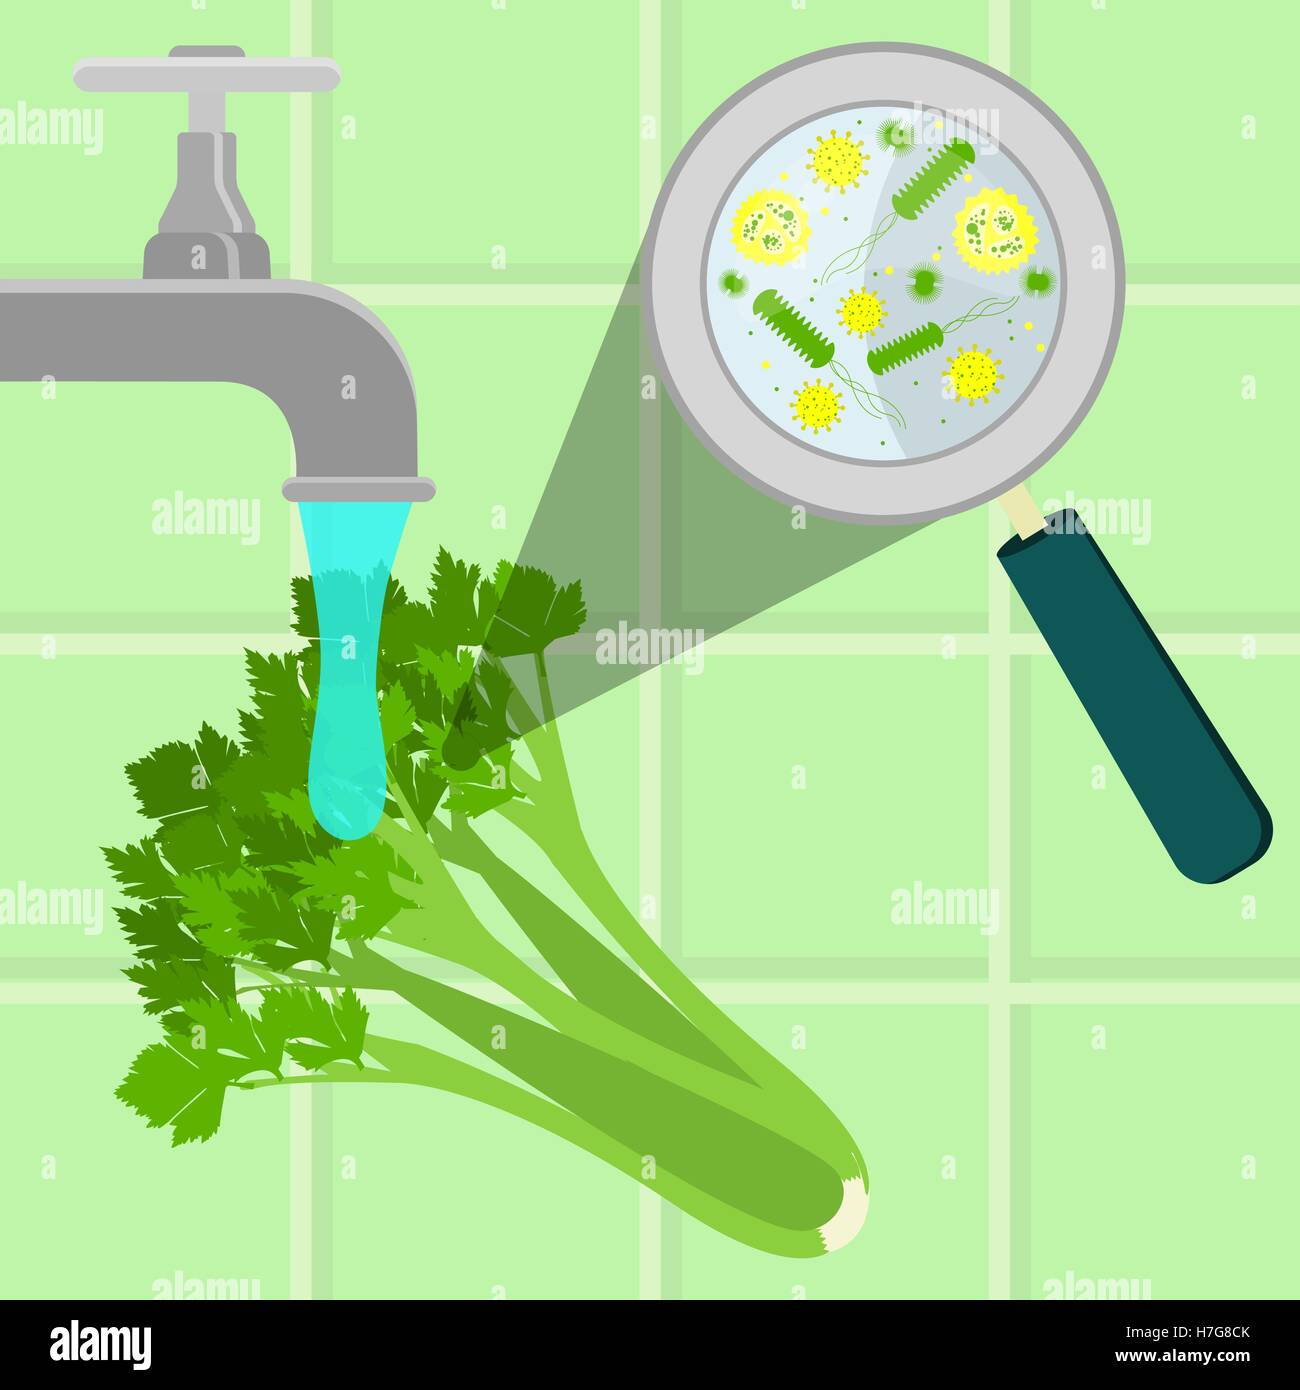 Kontaminierte Sellerie wird gereinigt und gewaschen in einer Küche. Mikroorganismen, Viren und Bakterien in das Gemüse durch ein Mag vergrößert Stock Vektor